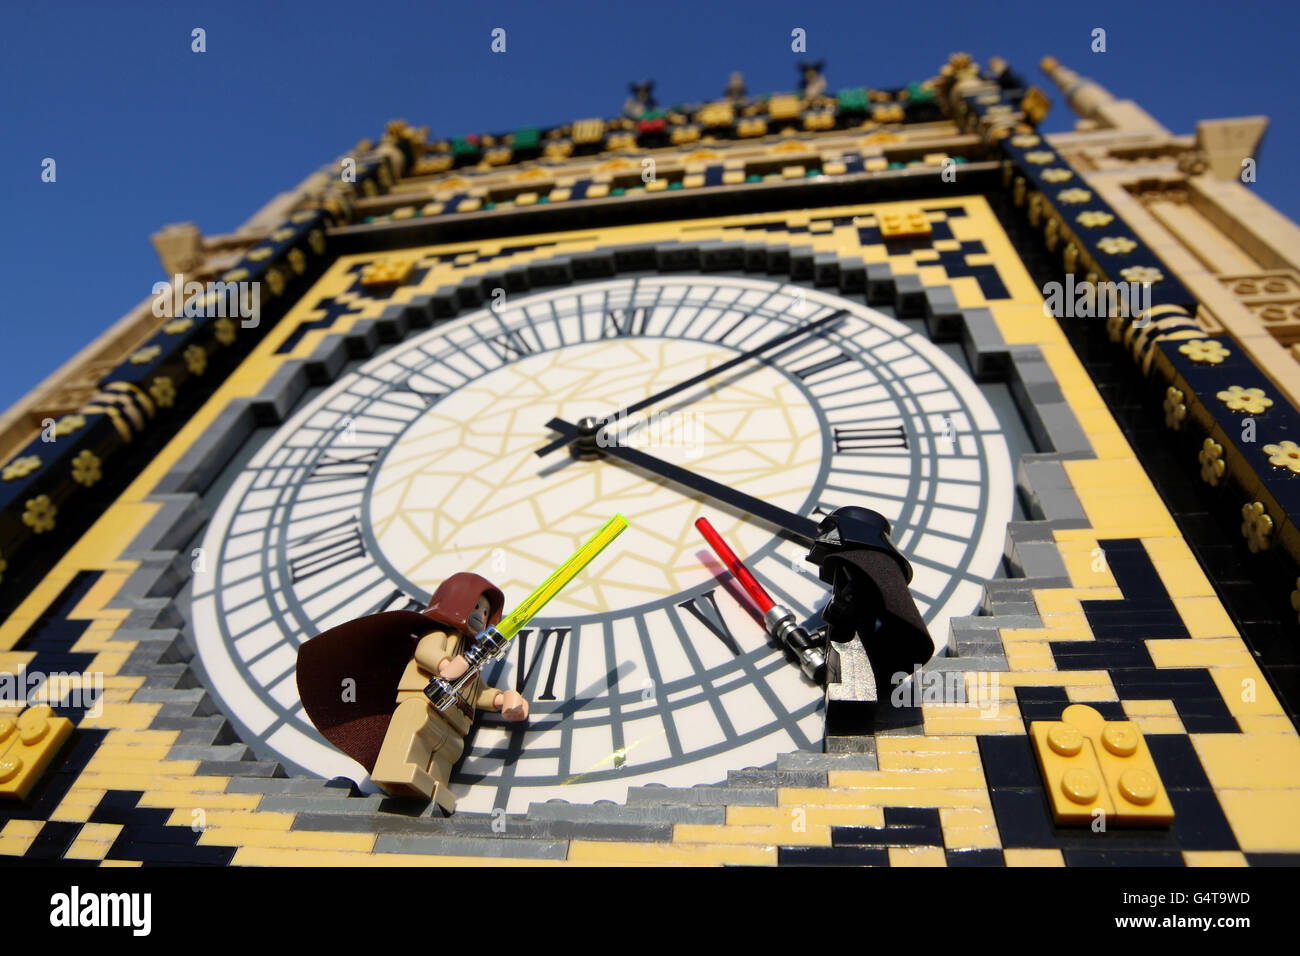 Darth Vader e OBI-WAN Kenobi combattono sul quadrante dell'orologio del Big  ben di Londra a Miniland a Legoland Windsor come il paesaggio LEGO in  miniatura, È stato rilevato da eroi e cattivi